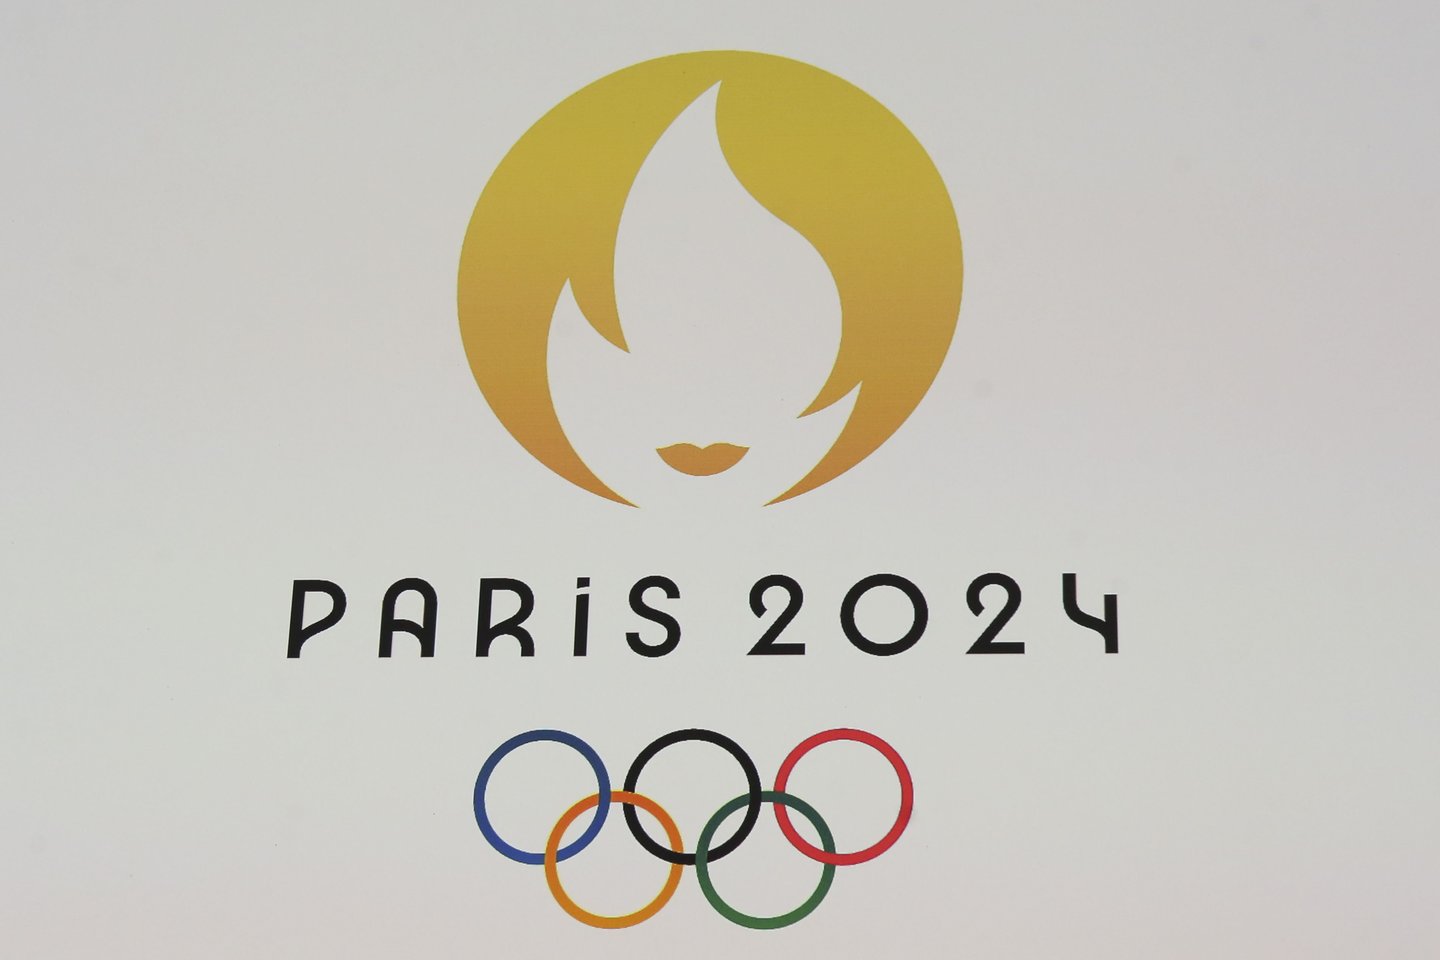  Paryžiuje pirmadienį buvo pristatytas 2024 metų olimpinių ir parolimpinių žaidynių logotipai, vaizduojantys olimpinę ugnį ant auksinio medalio.<br> imago-scanpix nuotr.